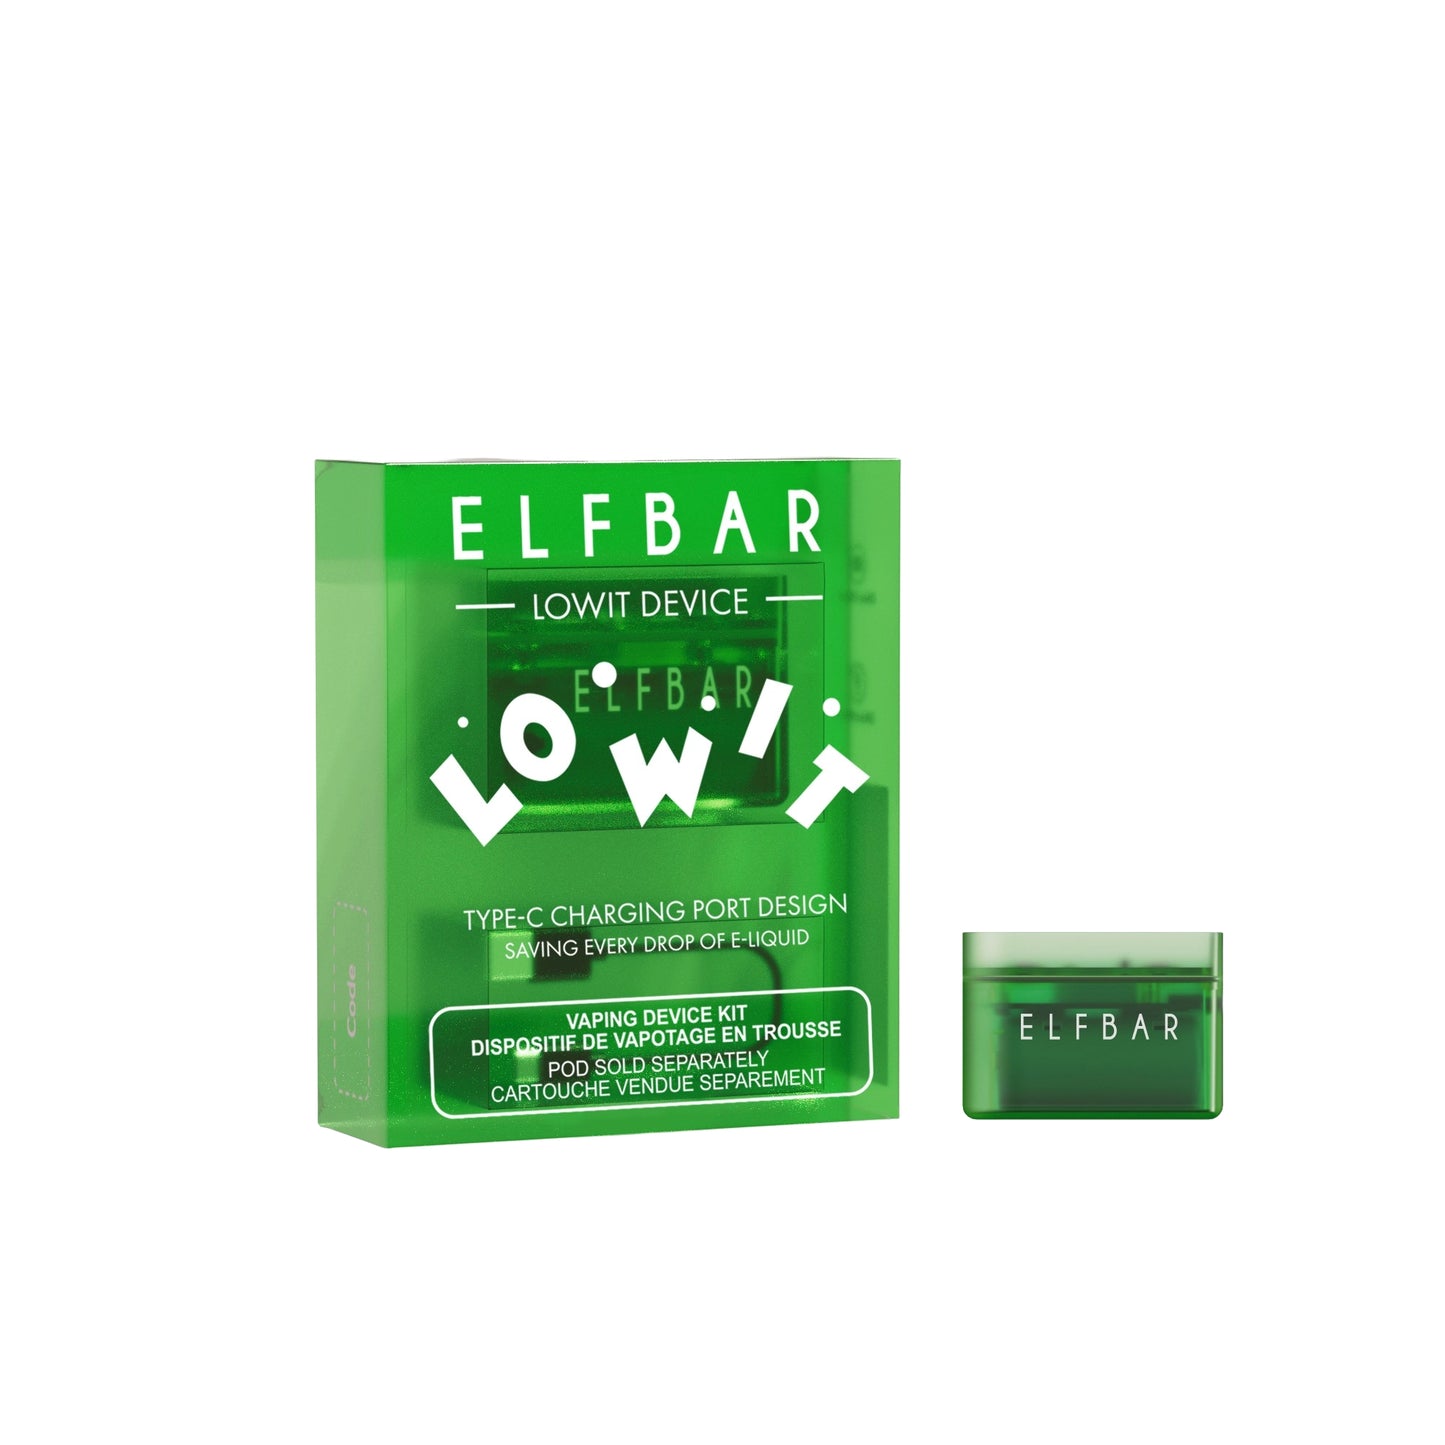 ELFBAR_Lowit_Pod_Vape_Battery_Device_Green